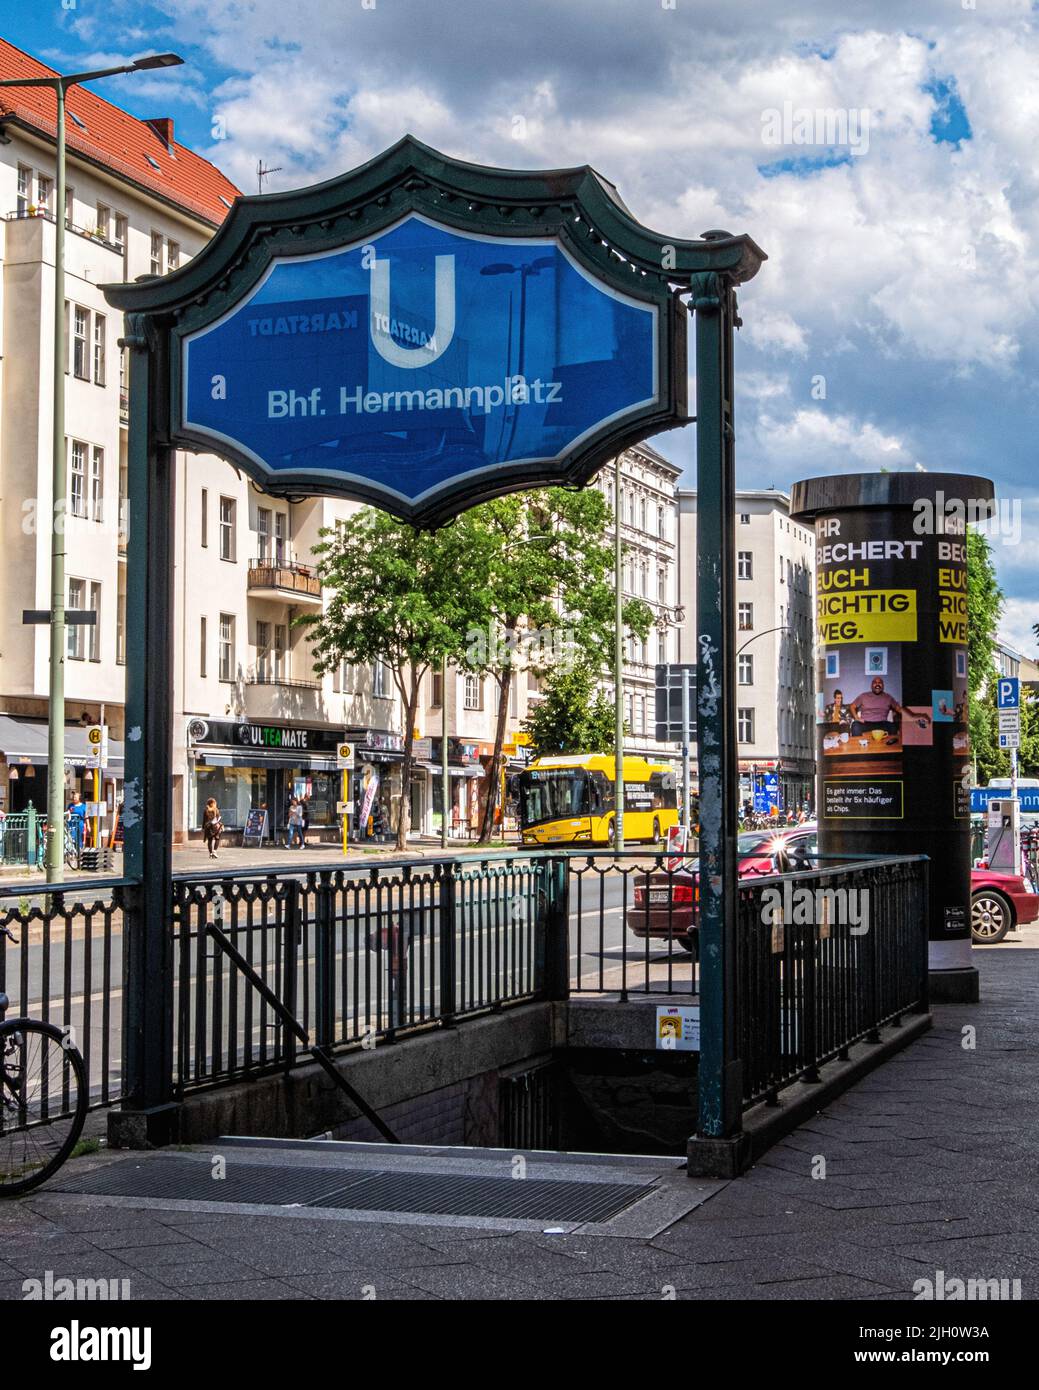 La estación de metro de Hermannplatz U-bahn en Neukölln, Berlín, ofrece líneas U8 y U7 Foto de stock